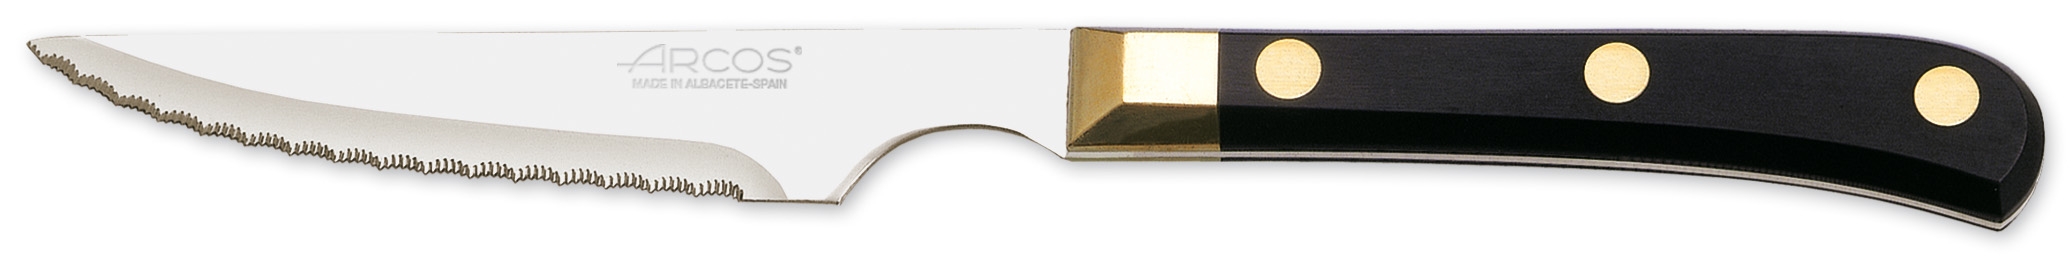 Biffkniv Lux 22cm Arcos / Steak knife